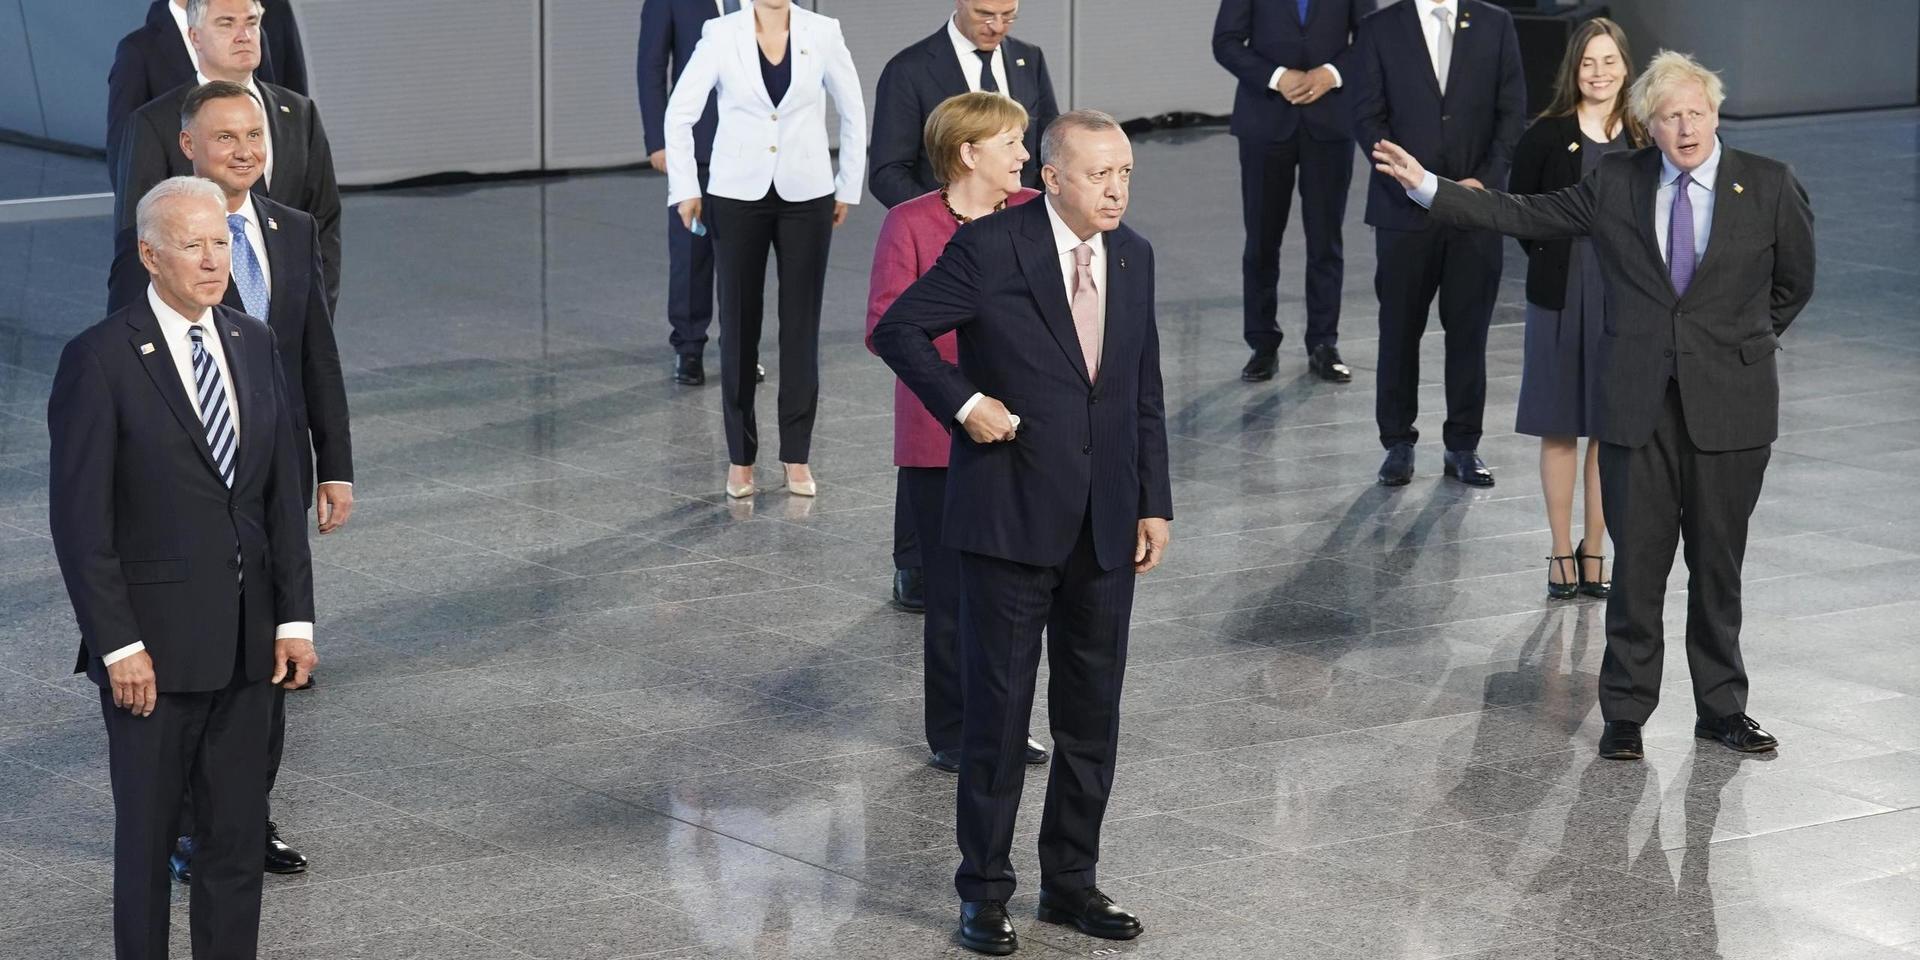 USA:s president Joe Biden, Turkiets president Recep Tayyip Erdogan och Storbritanniens premiärminister Boris Johnson i främsta ledet när Nato-ländernas ledare fotograferas i Bryssel. Där bakom syns även bland andra Danmarks statsminister Mette Frederiksen och Tyskland förbundskansler Angela Merkel.